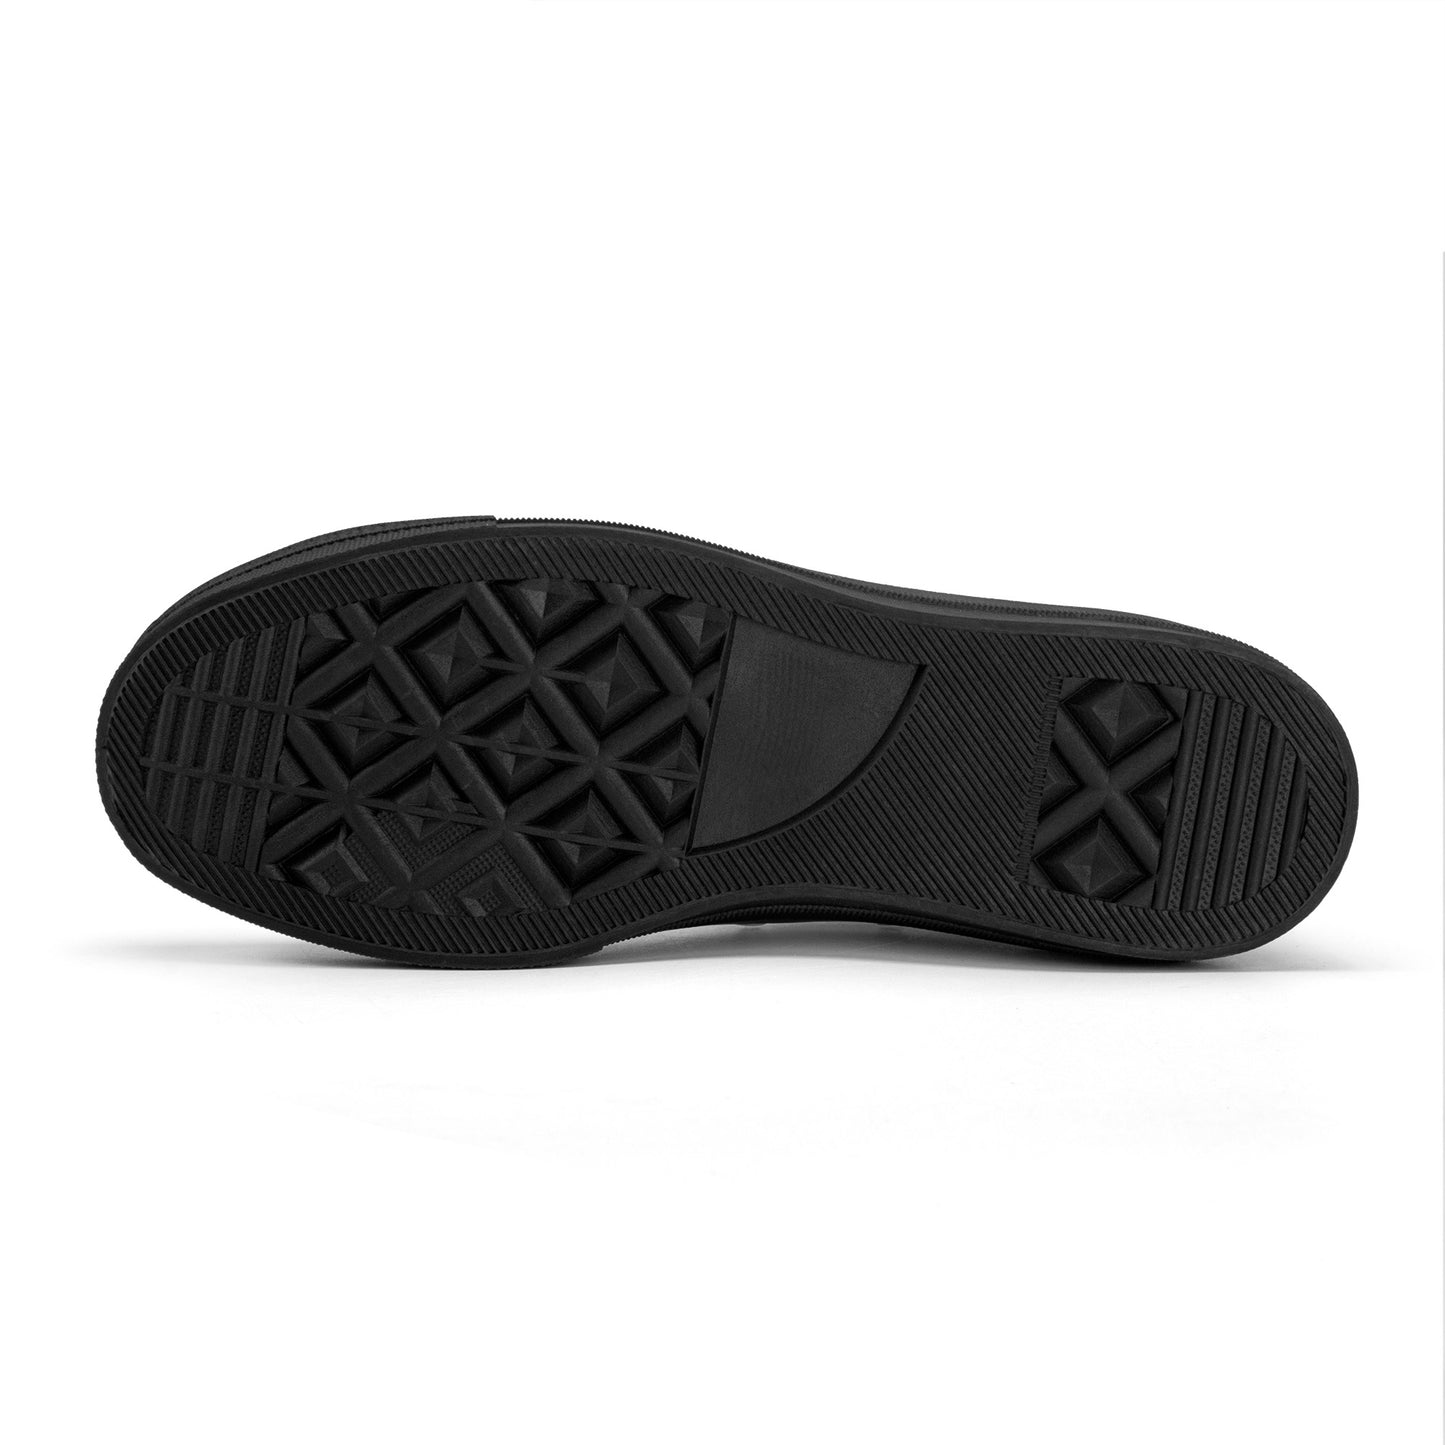 Unisex Classic Low Top Canvas Shoes - Black